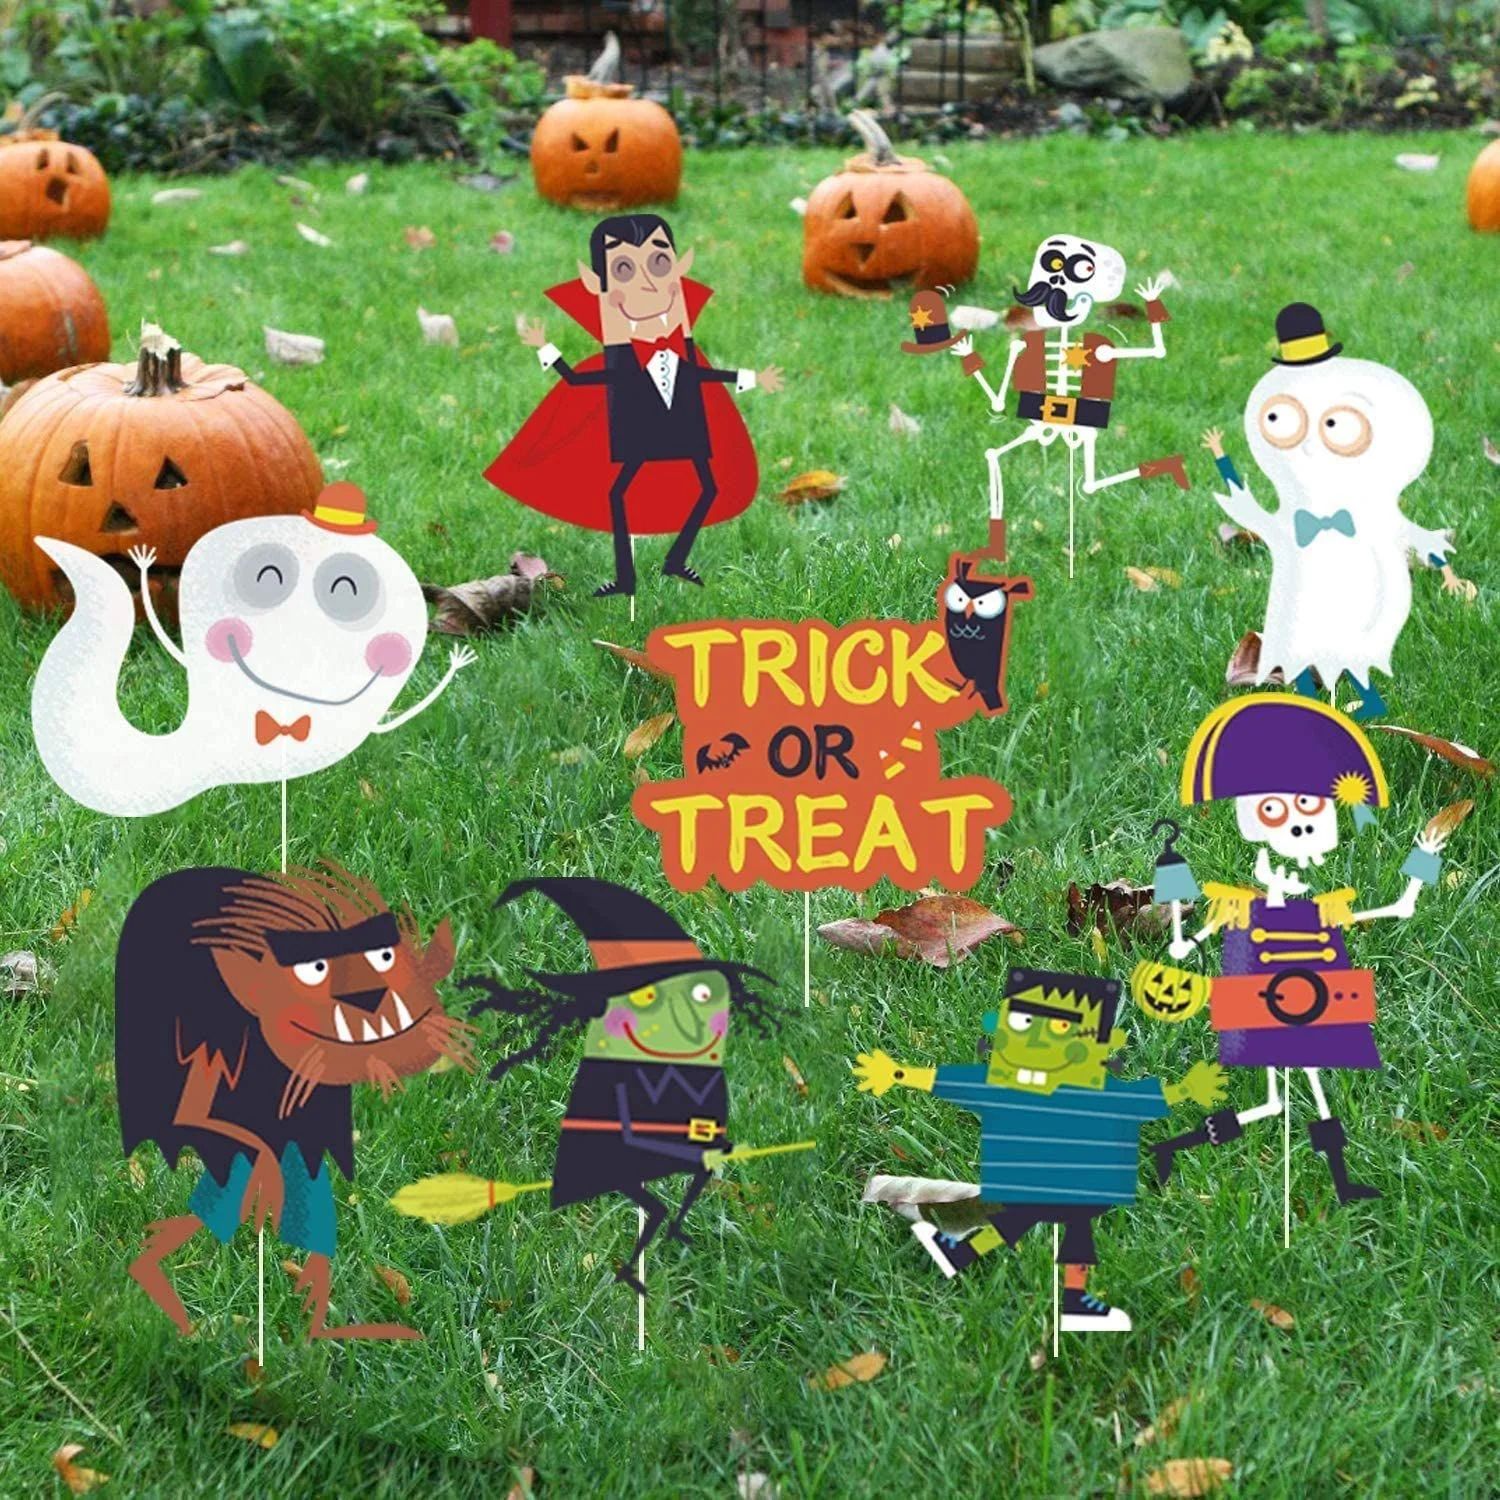 ハロウィン 庭園 ラベル ガーティー マーカー 飾り付け 雰囲気作り Halloween (タイプ2)